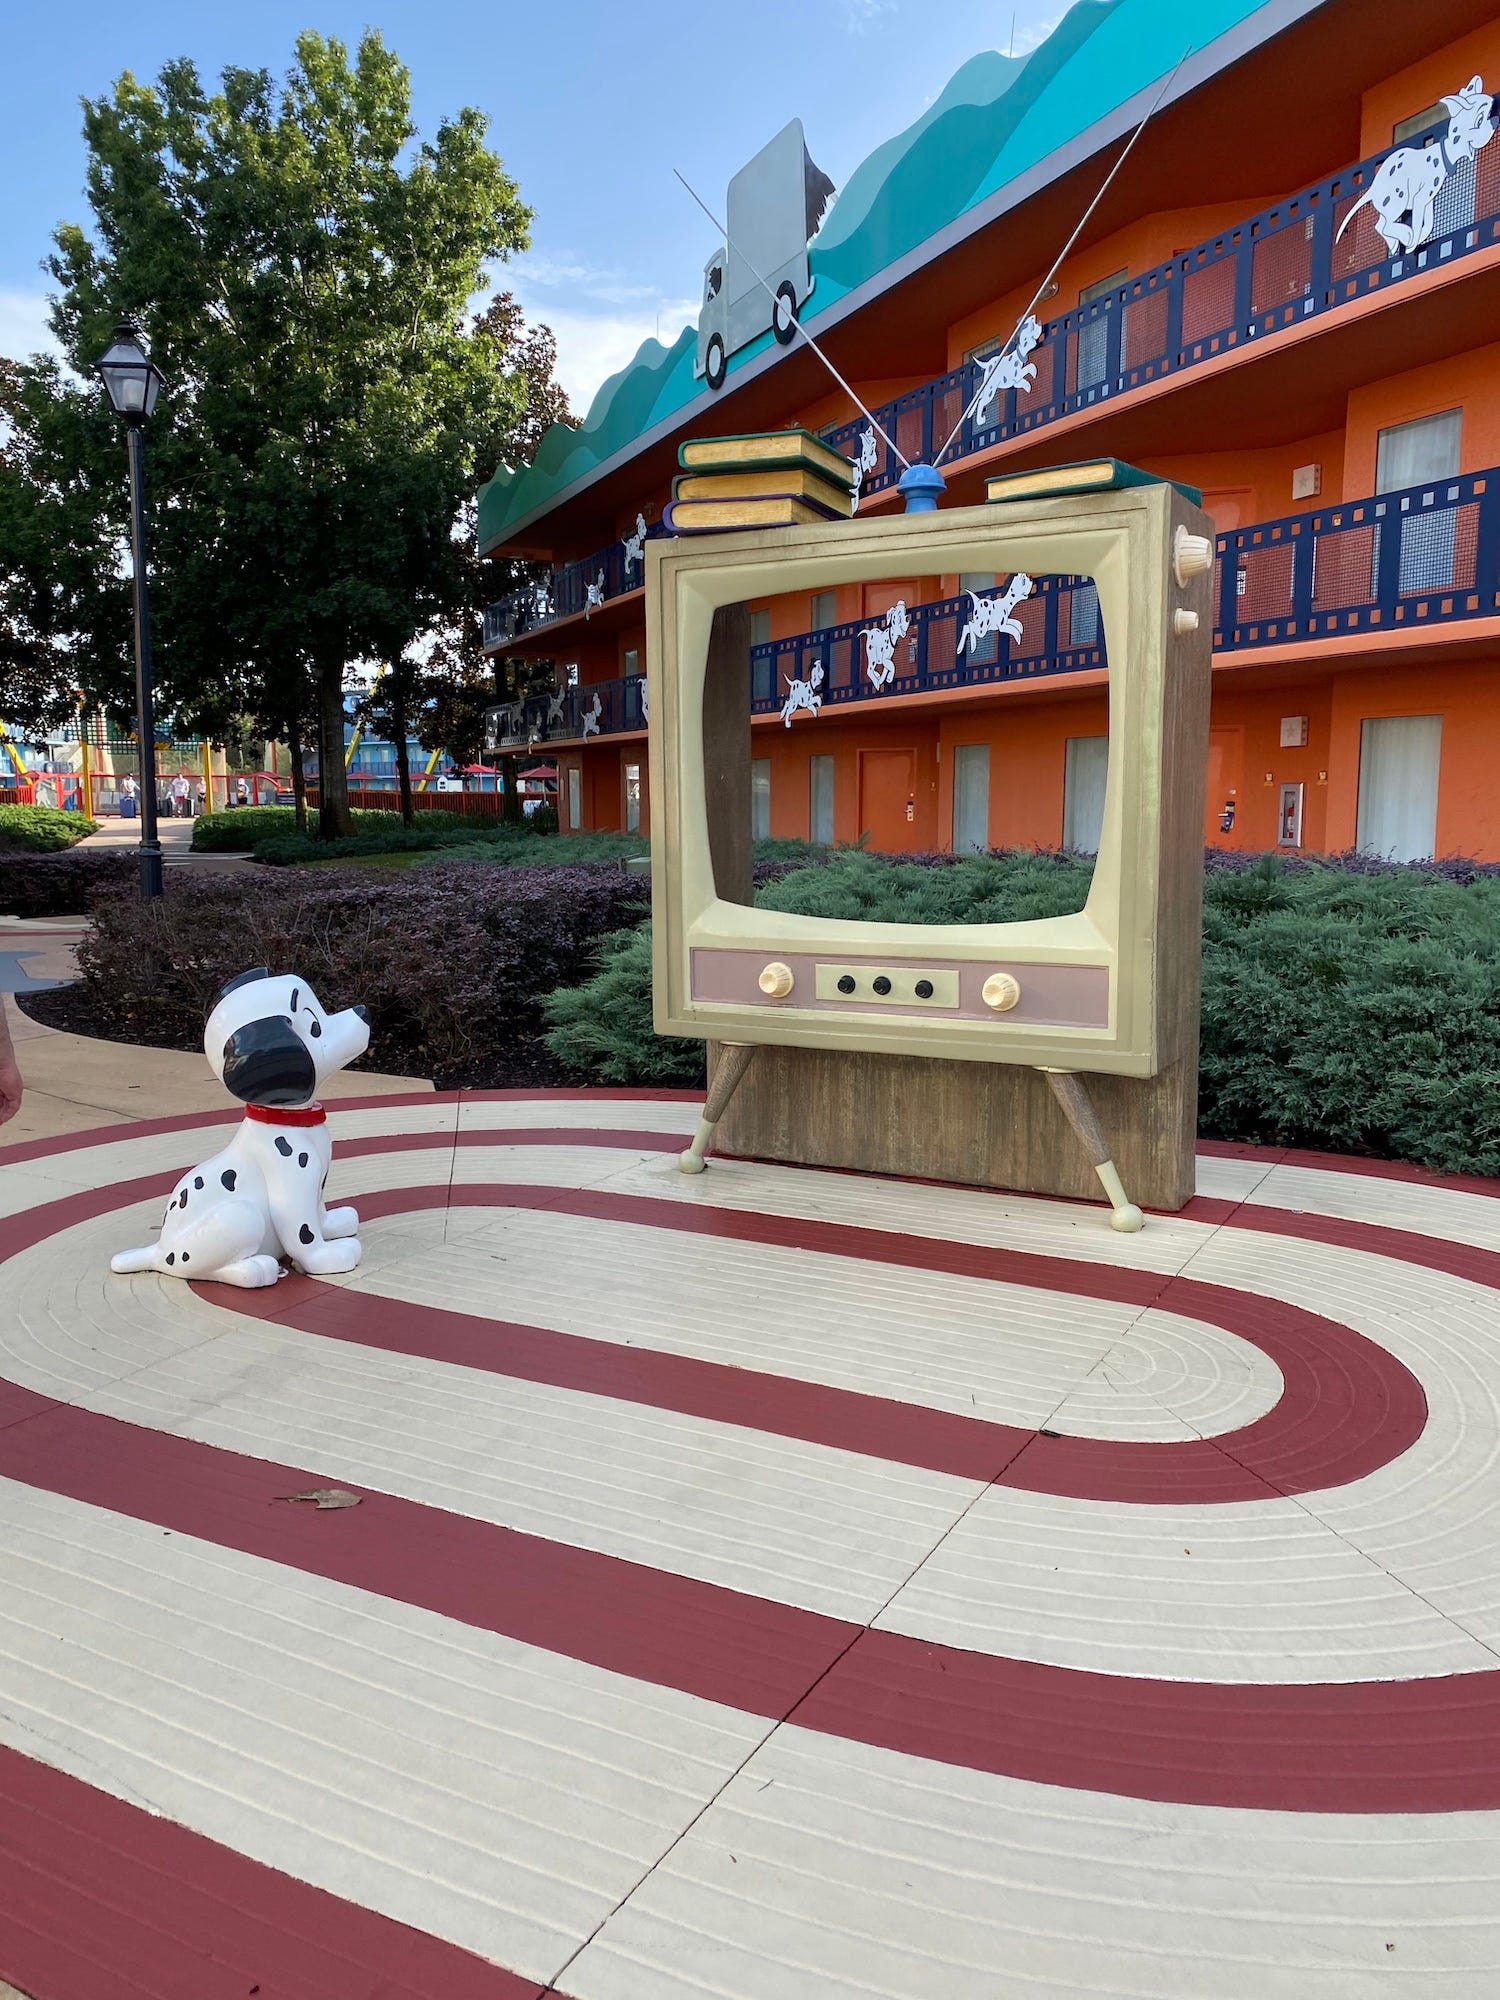 Der Bereich „101 Dalmatiner“ von Disneys All-Star Movies Resort.